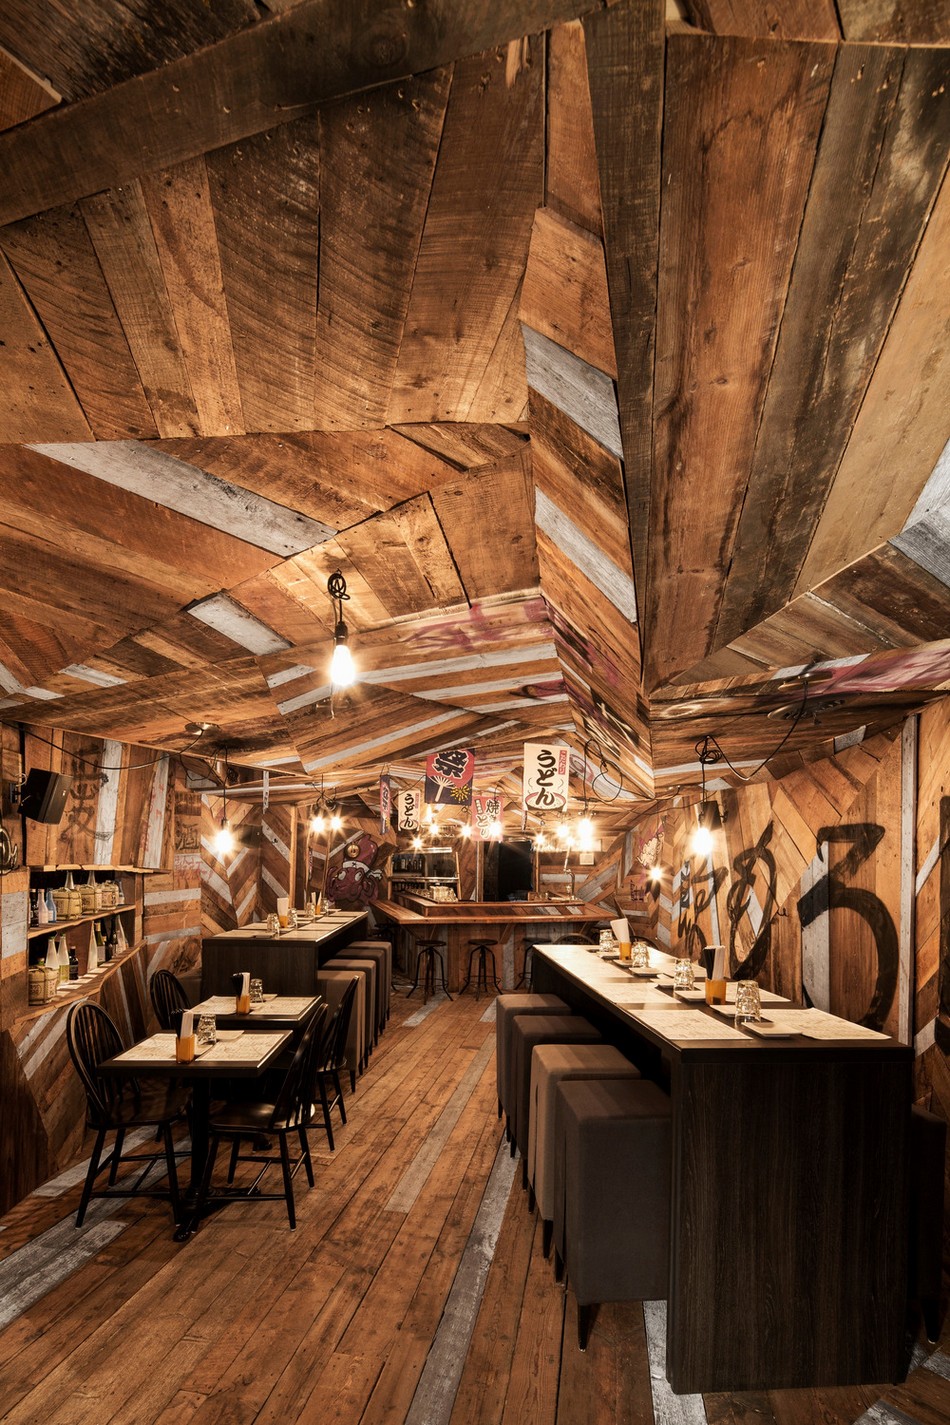 Яркий бар-ресторан внутри деревянного змея: Izakaya Kinoya